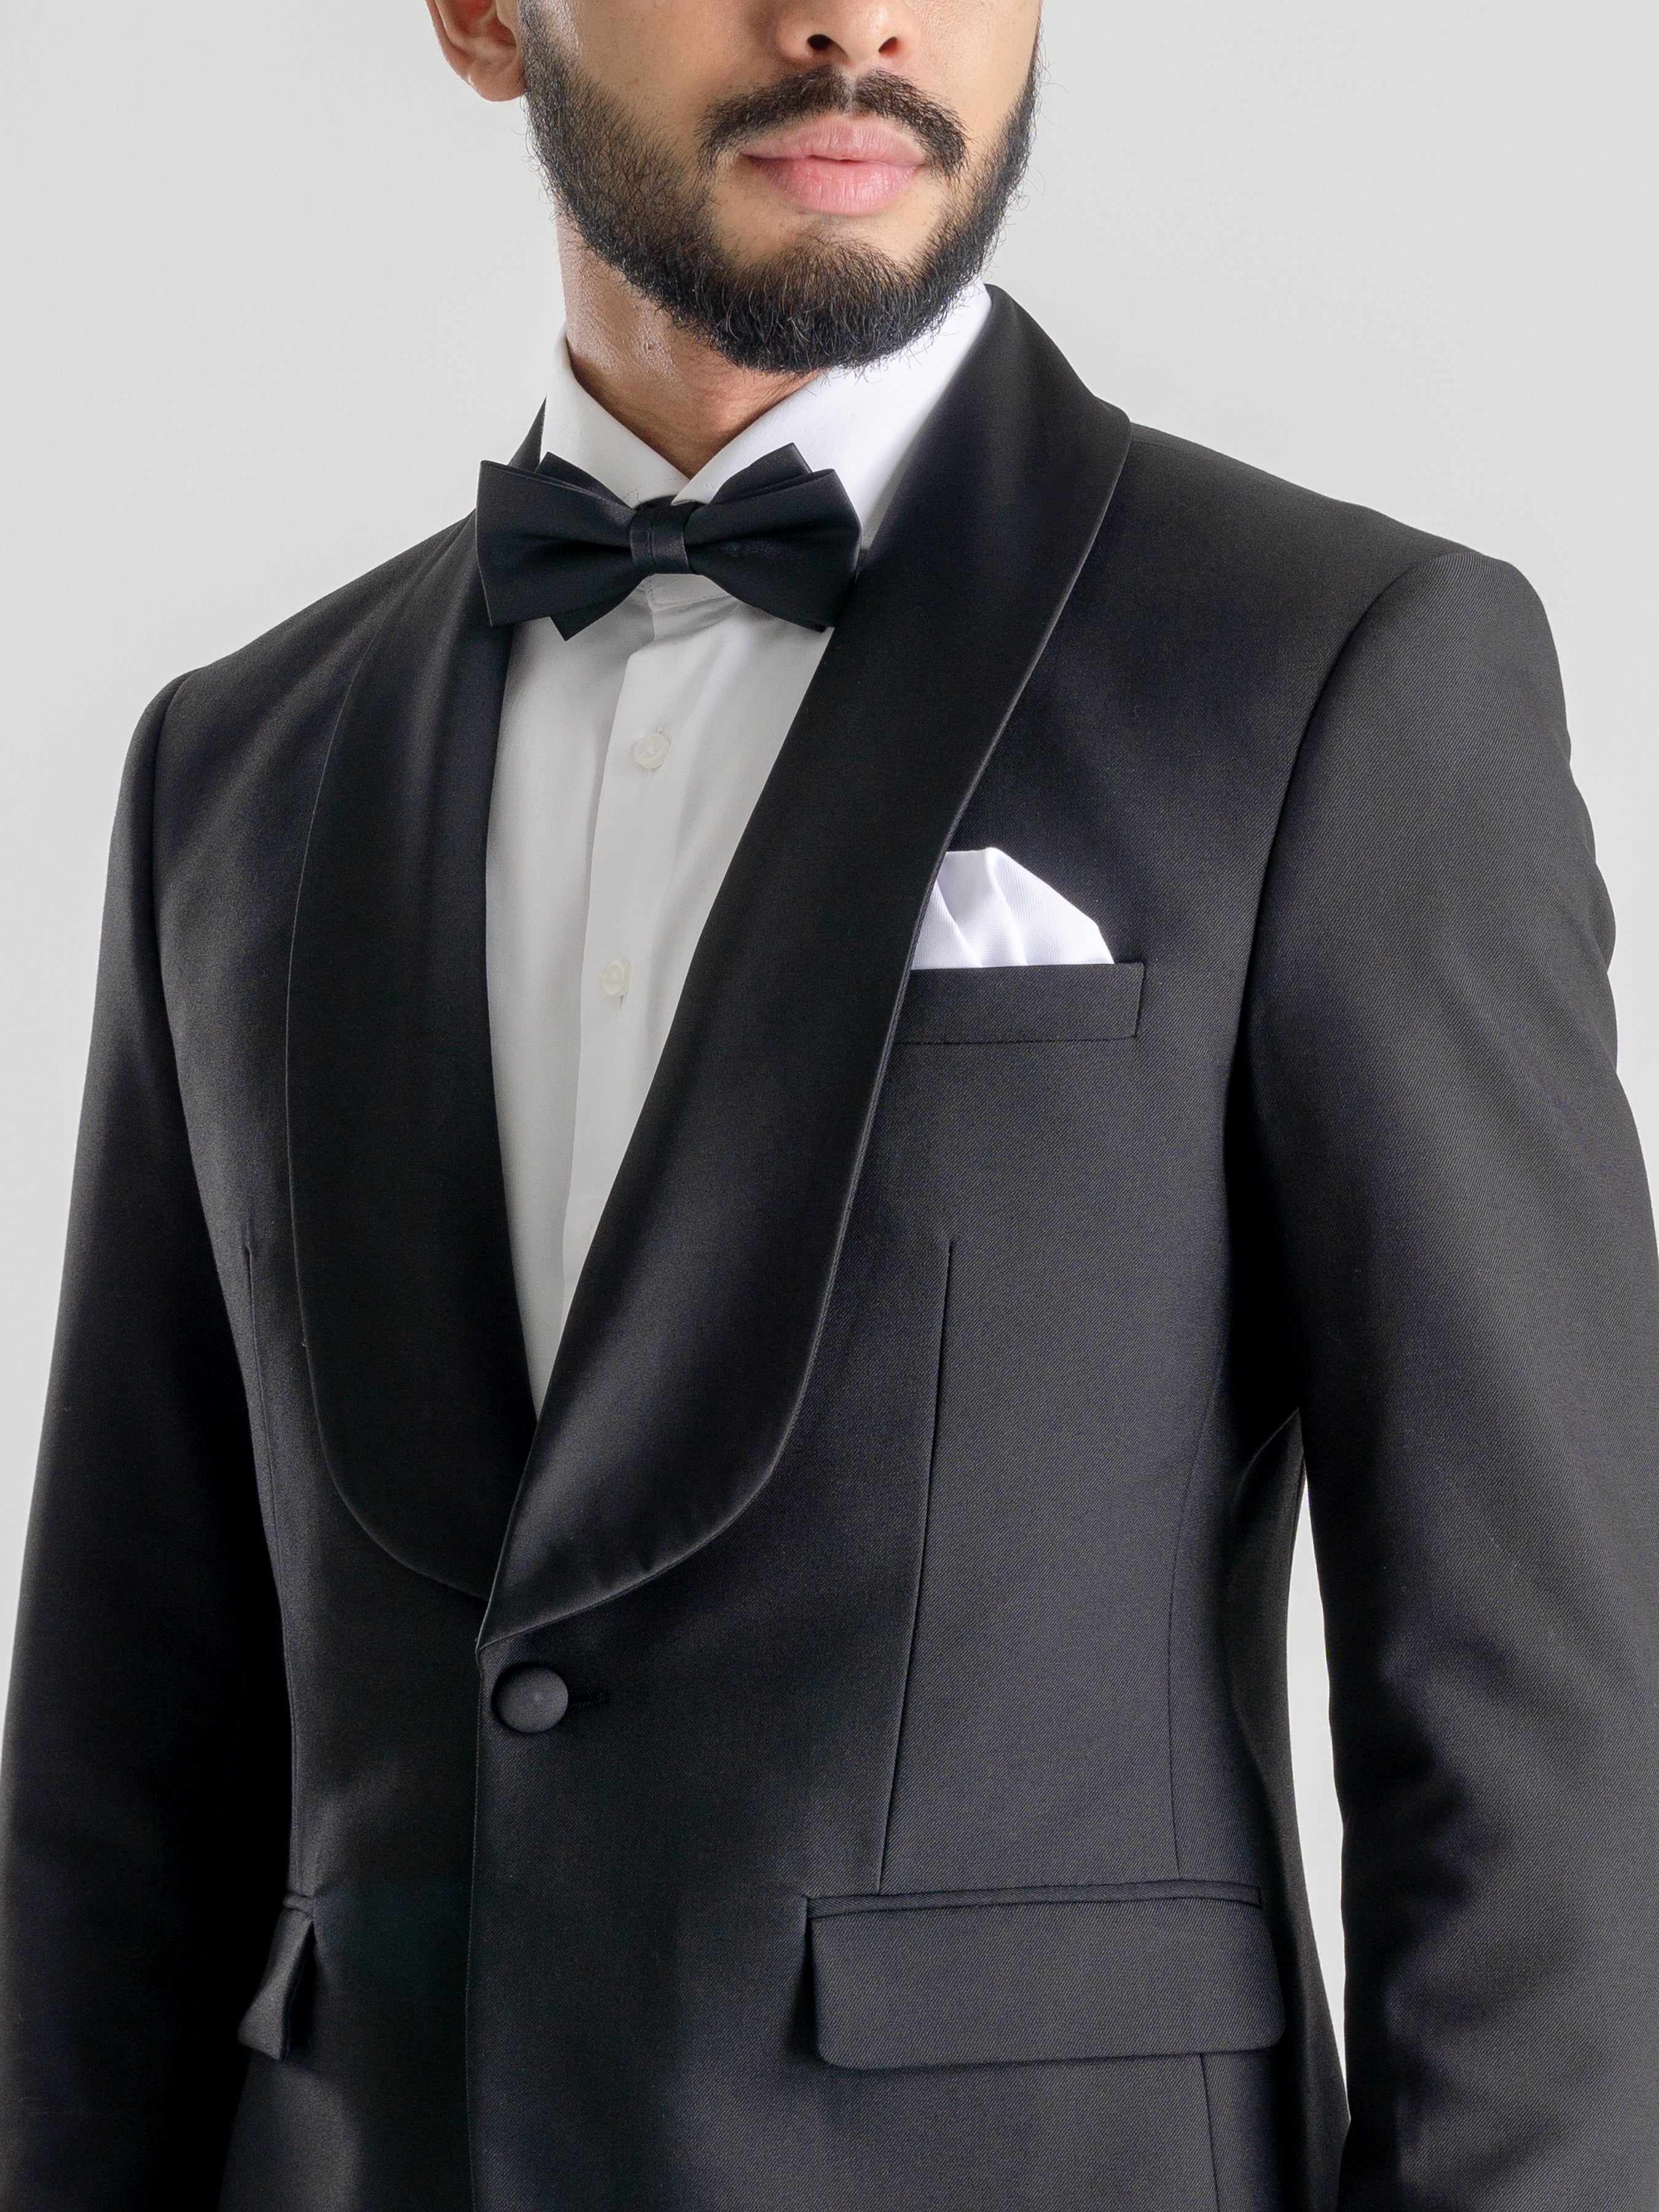 Single Breasted Tuxedo Blazer - Black Plain (Shawl Lapel) | Zeve Shoes